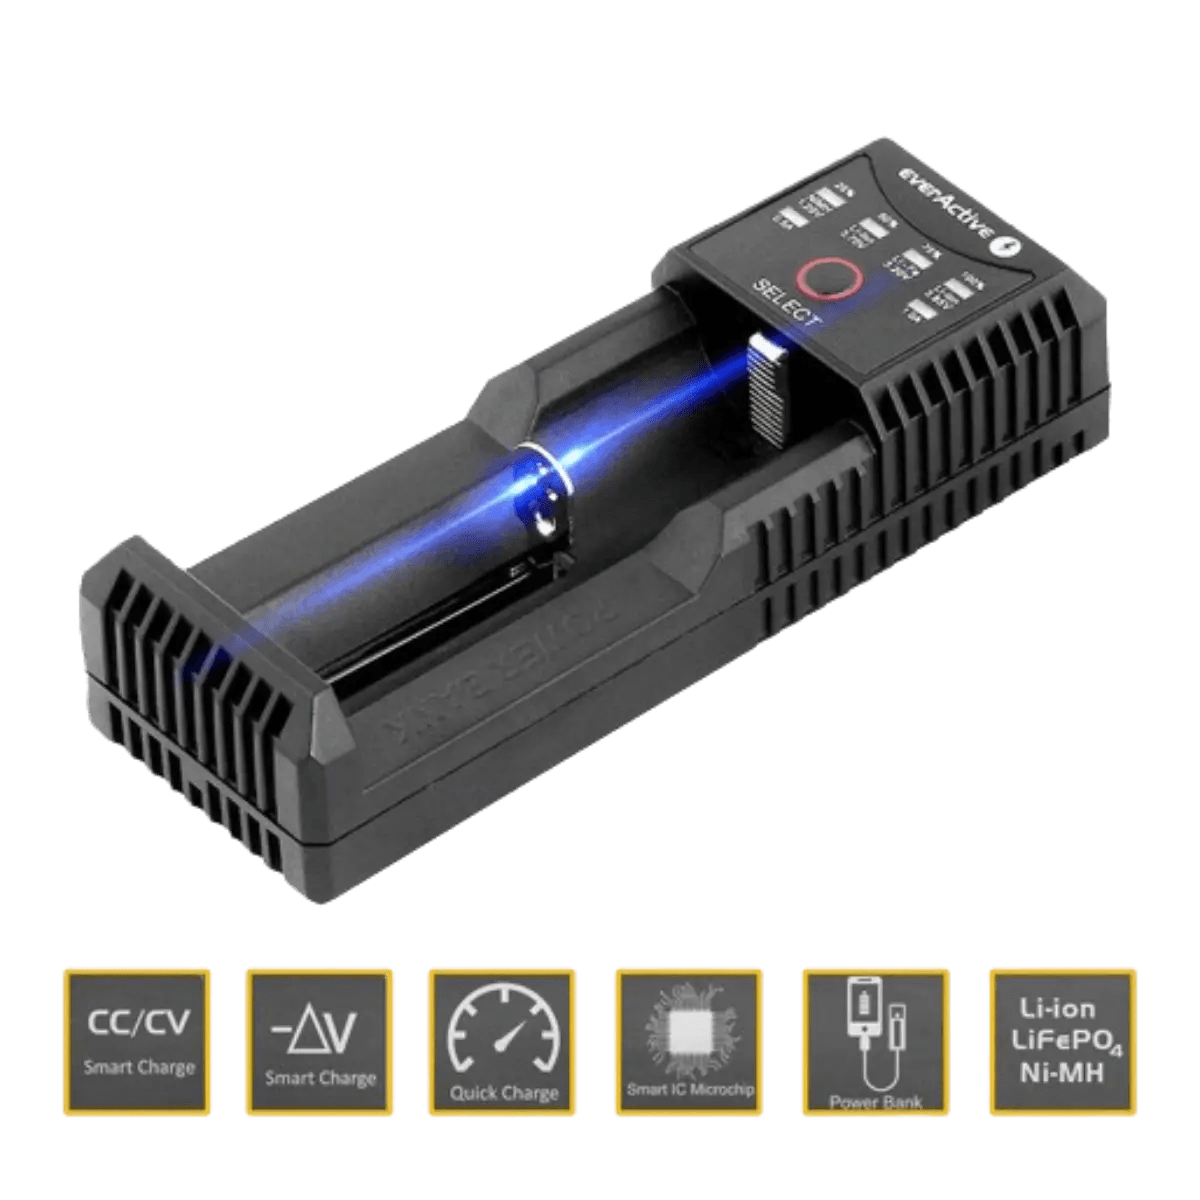 Chargeur pour 1 batterie, Li-Ion, LiFePO4 et Ni-MH